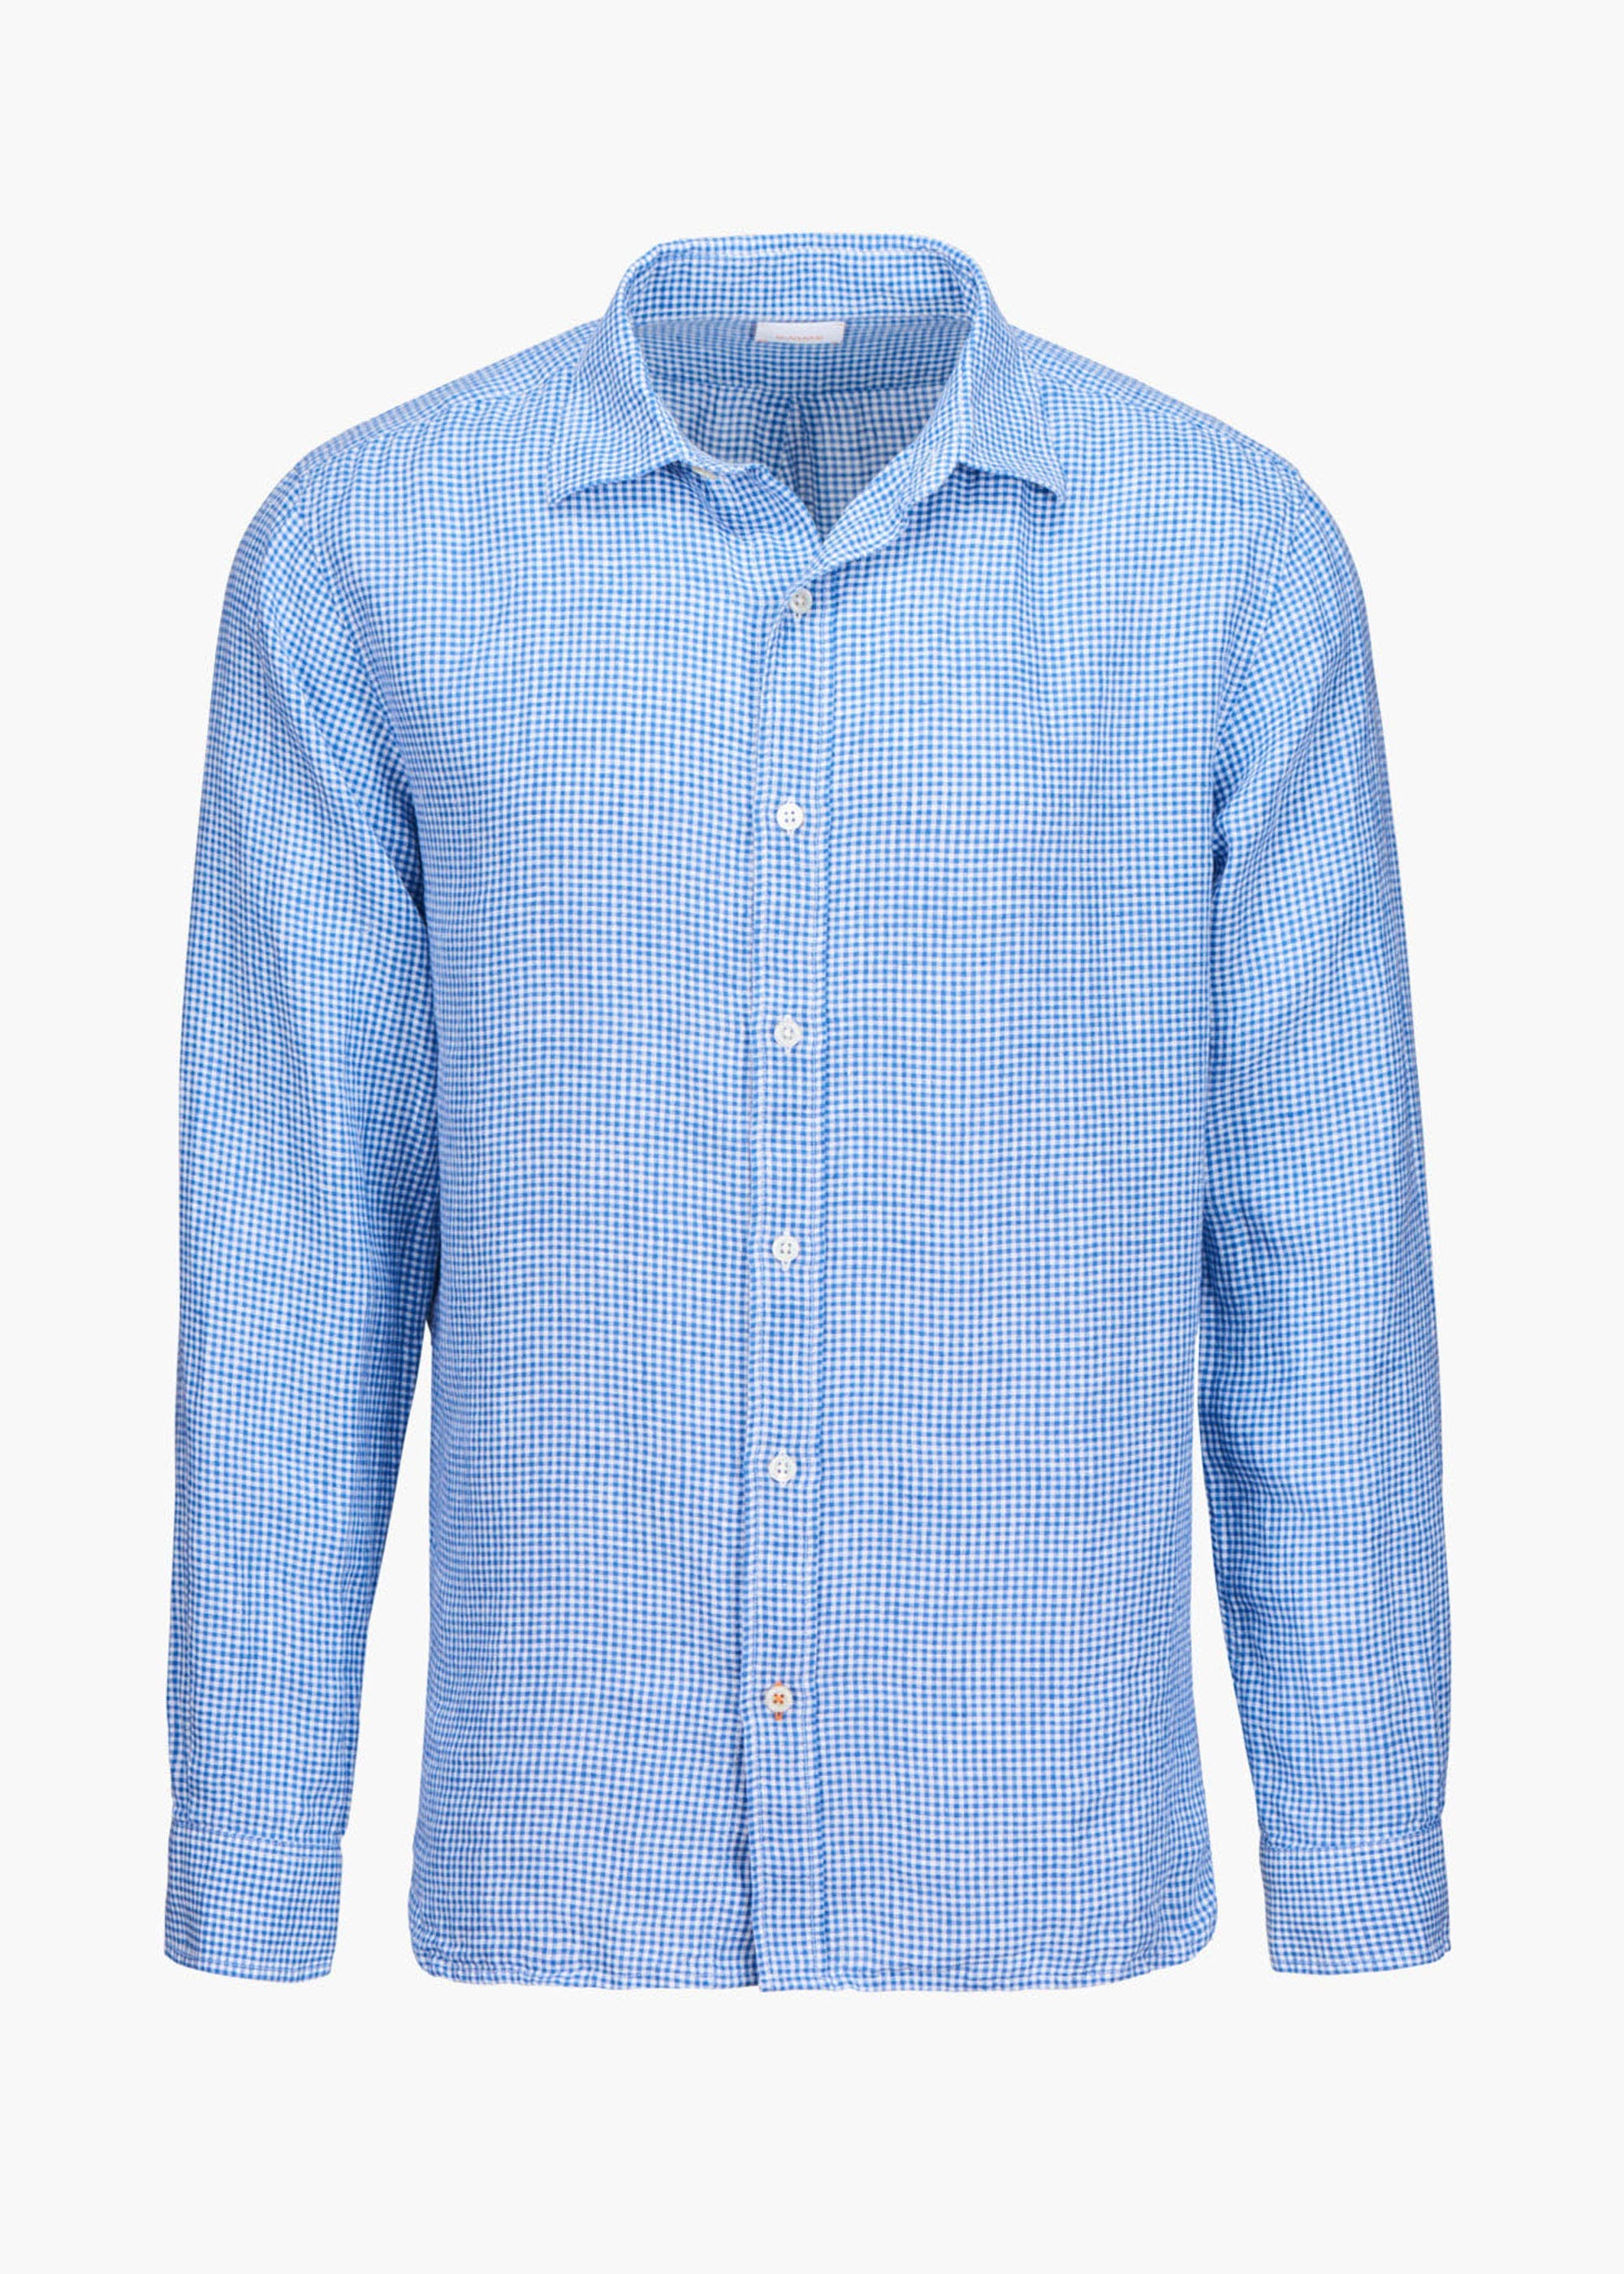 Amalfi Gingham Linen Shirt - background::white,variant::Ensign Blue Gingham